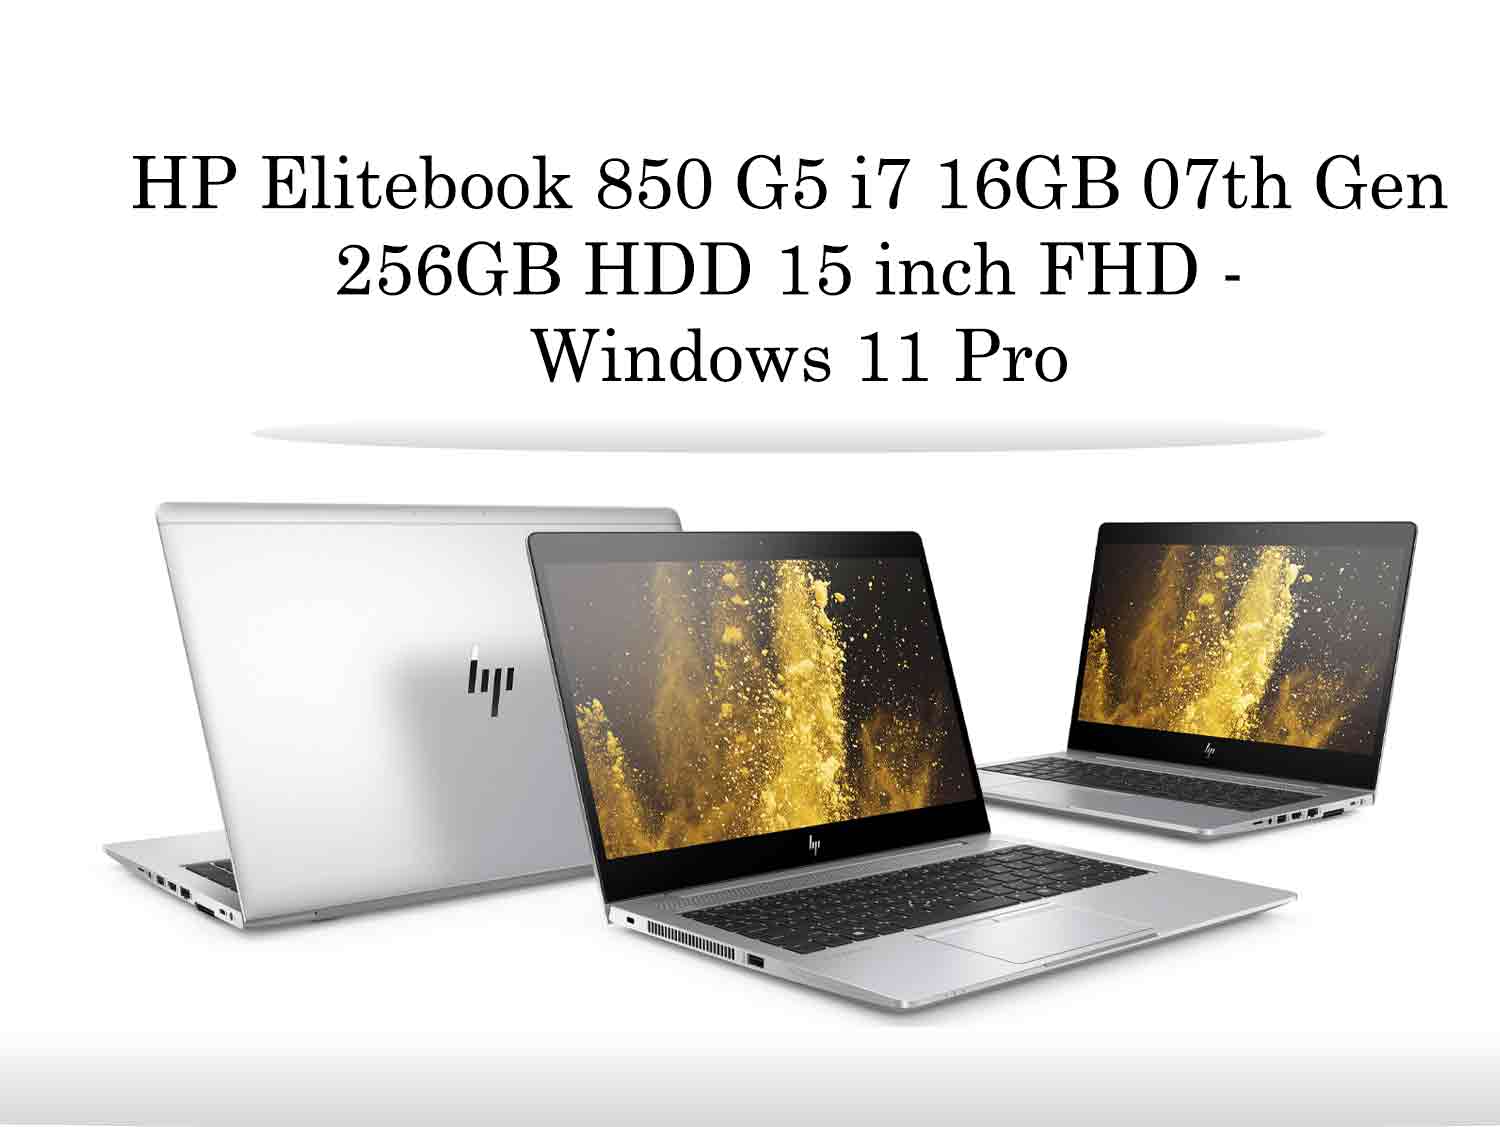 HP Elitebook 850 G5 i7 16GB - Display Screen